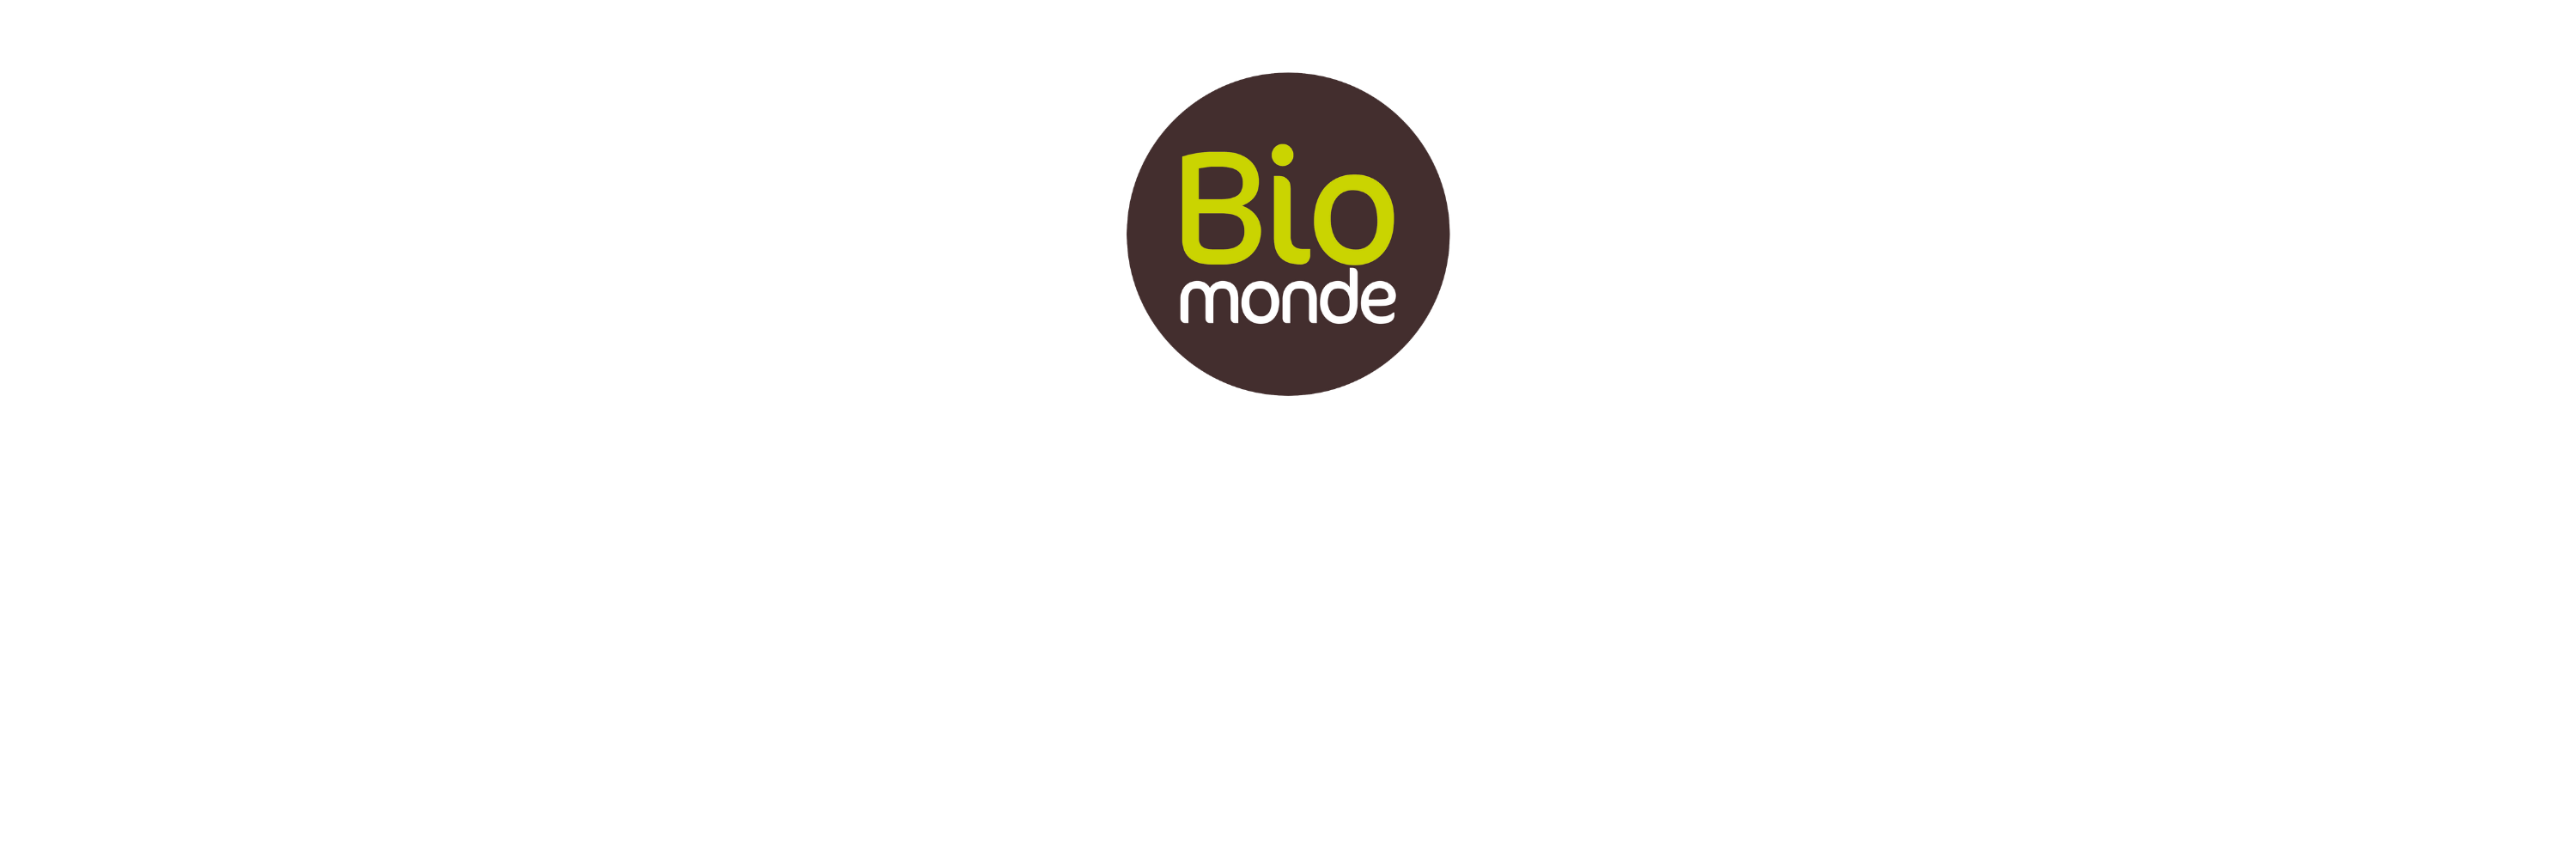 Biomonde - Holysphera